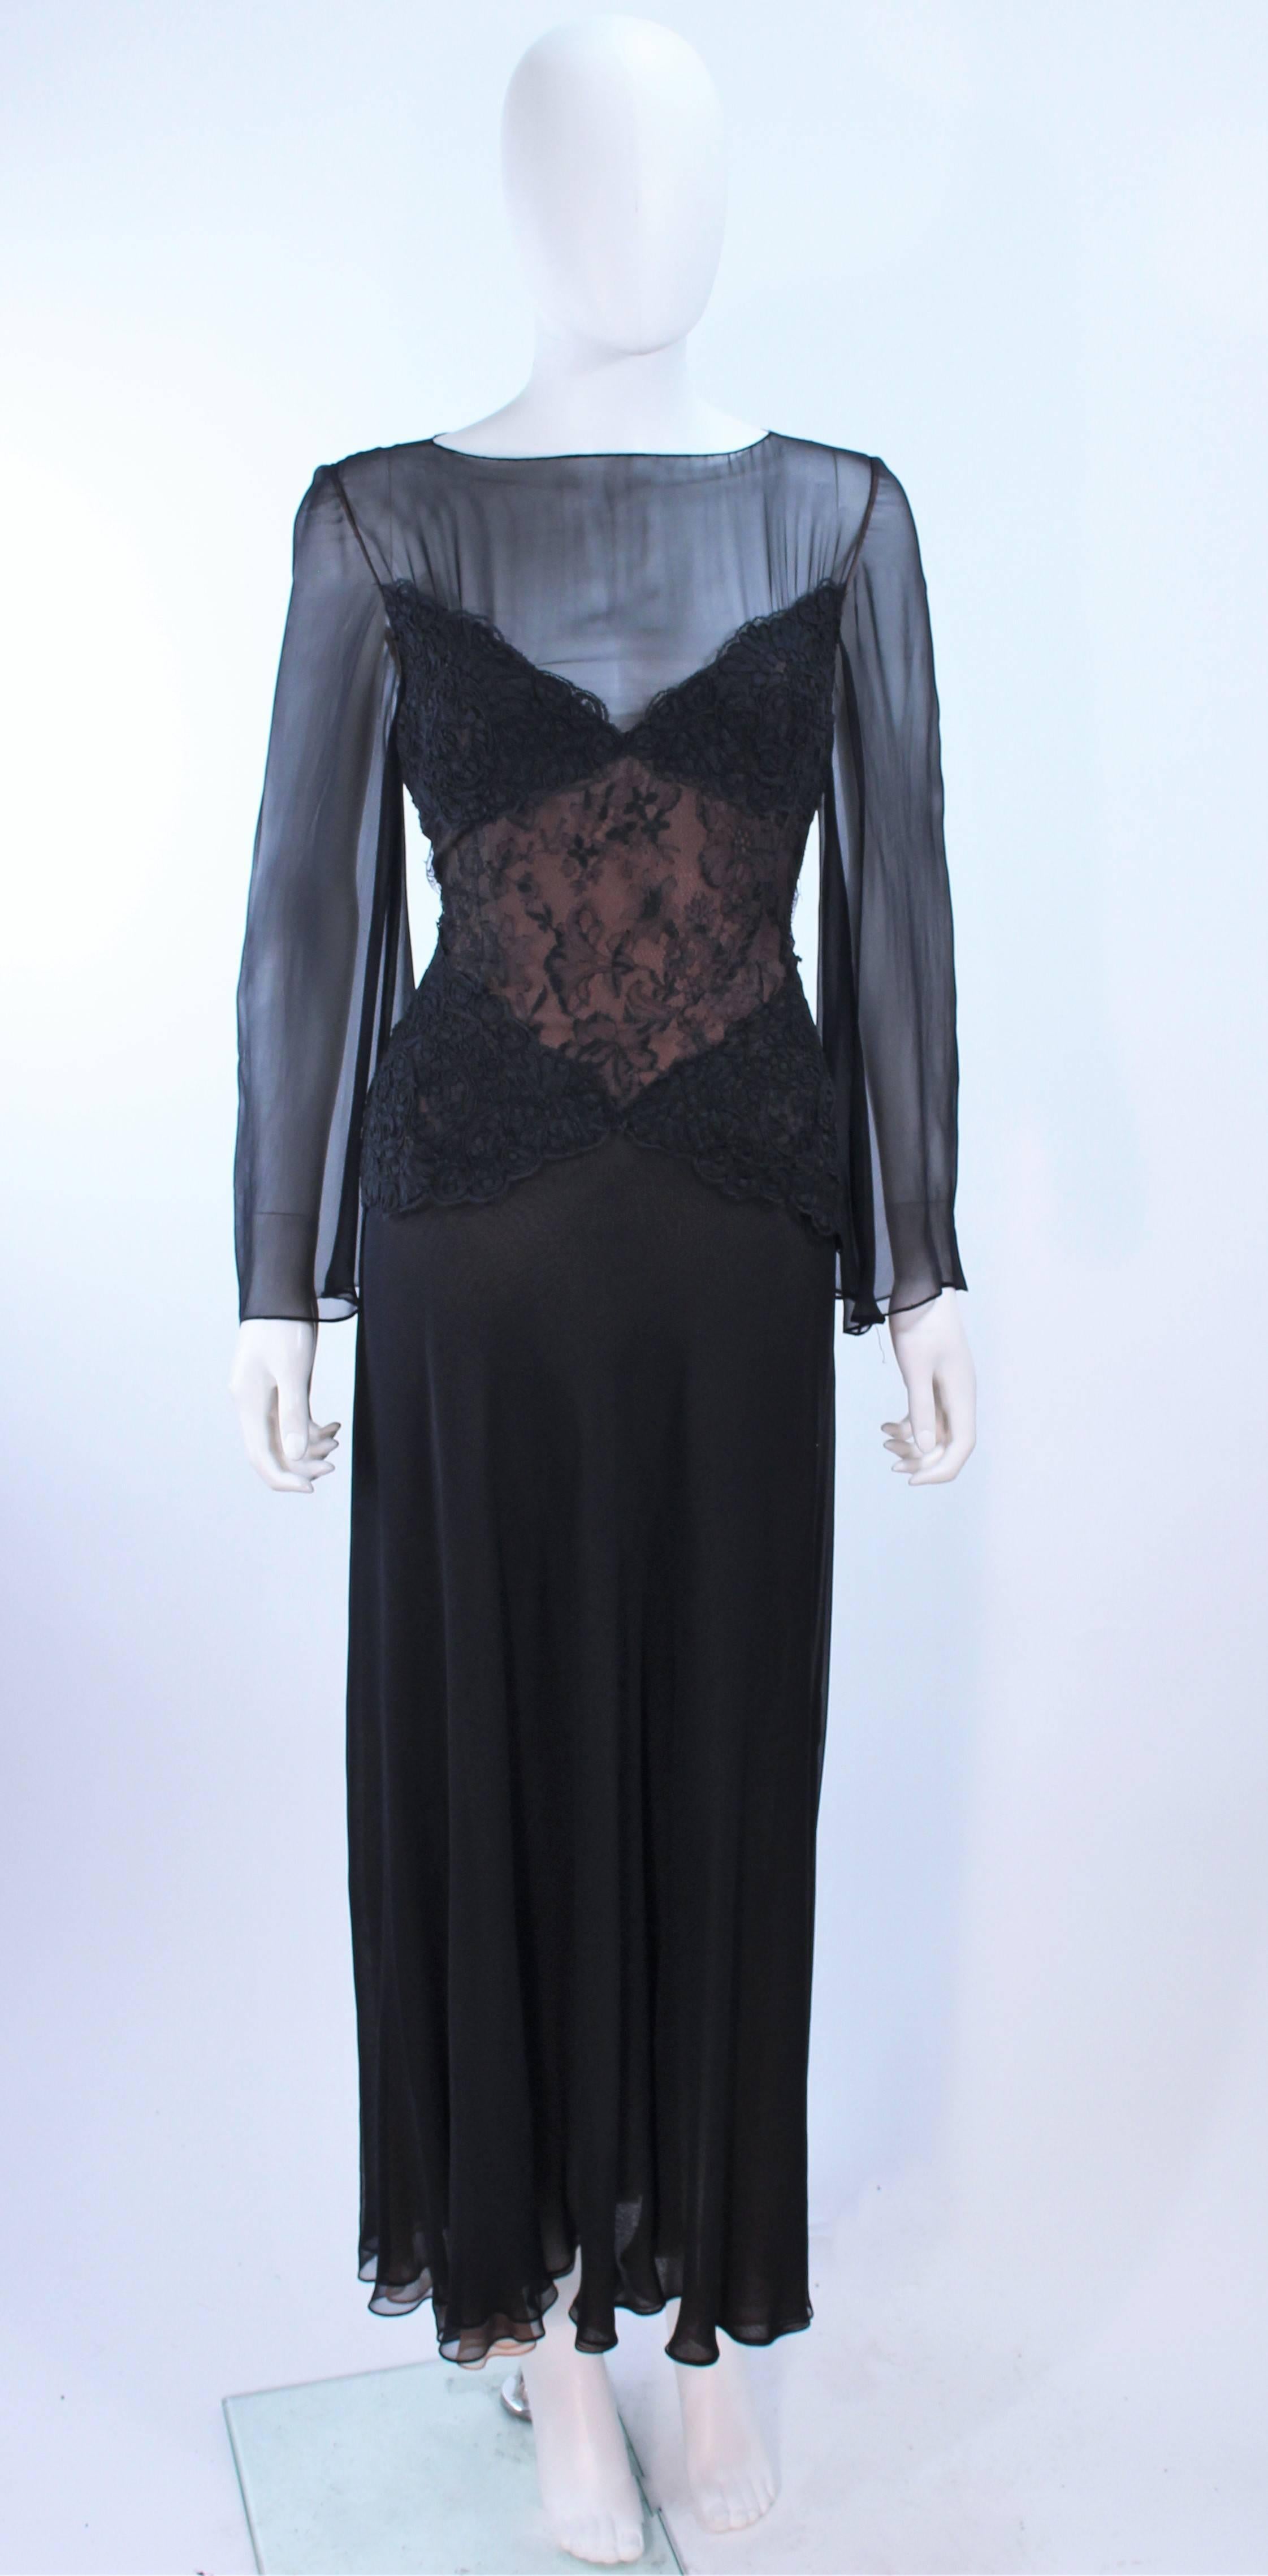 Cette robe Bill Blass est composée d'une mousseline de soie noire avec des applications en dentelle et une sous-couche nude. Les manches sont transparentes. Il y a une fermeture à glissière sur le côté. Vintage, en excellent état.

**Veuillez